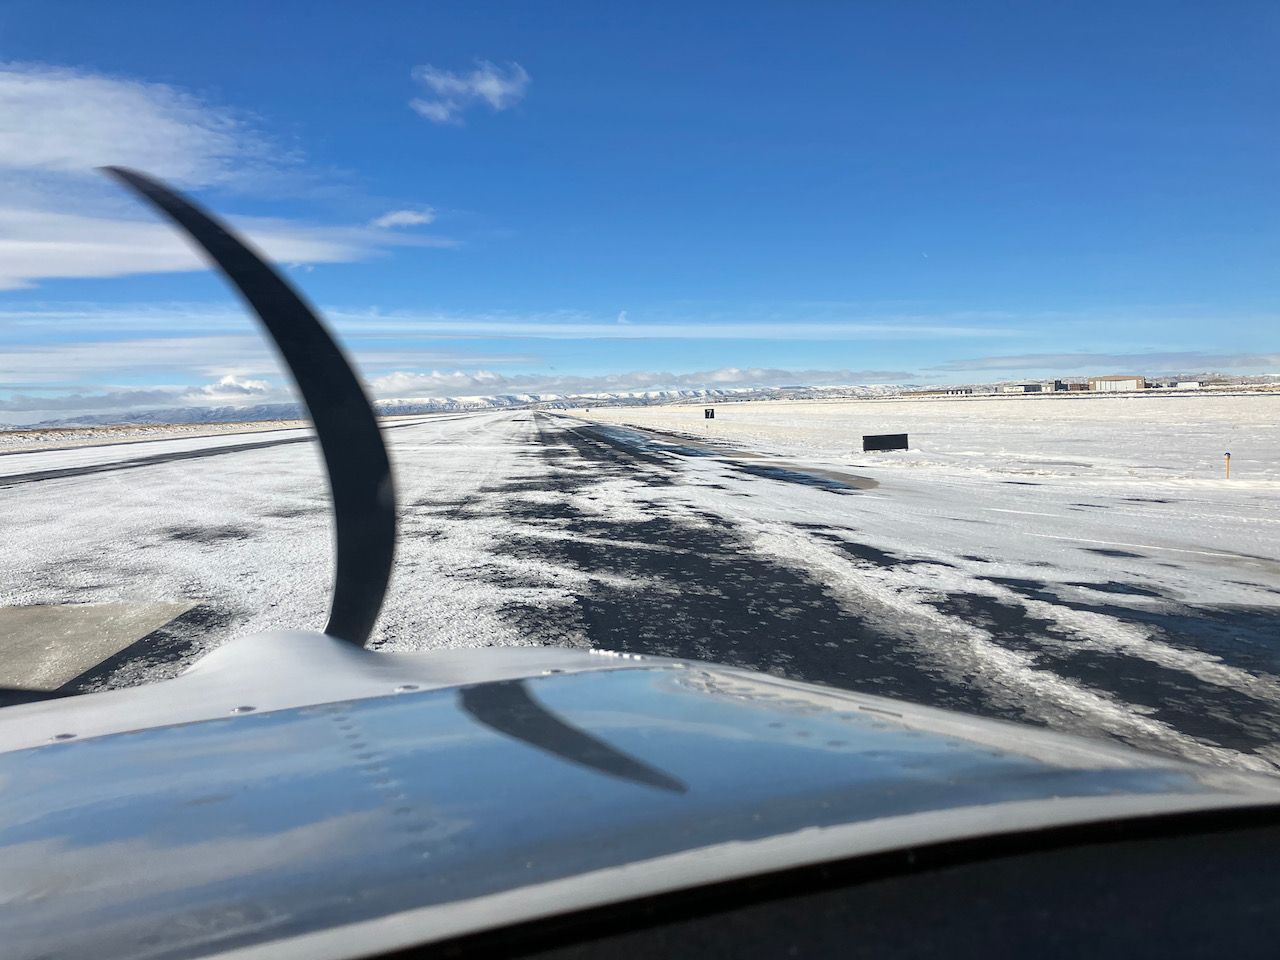 iced runway - 1.jpeg